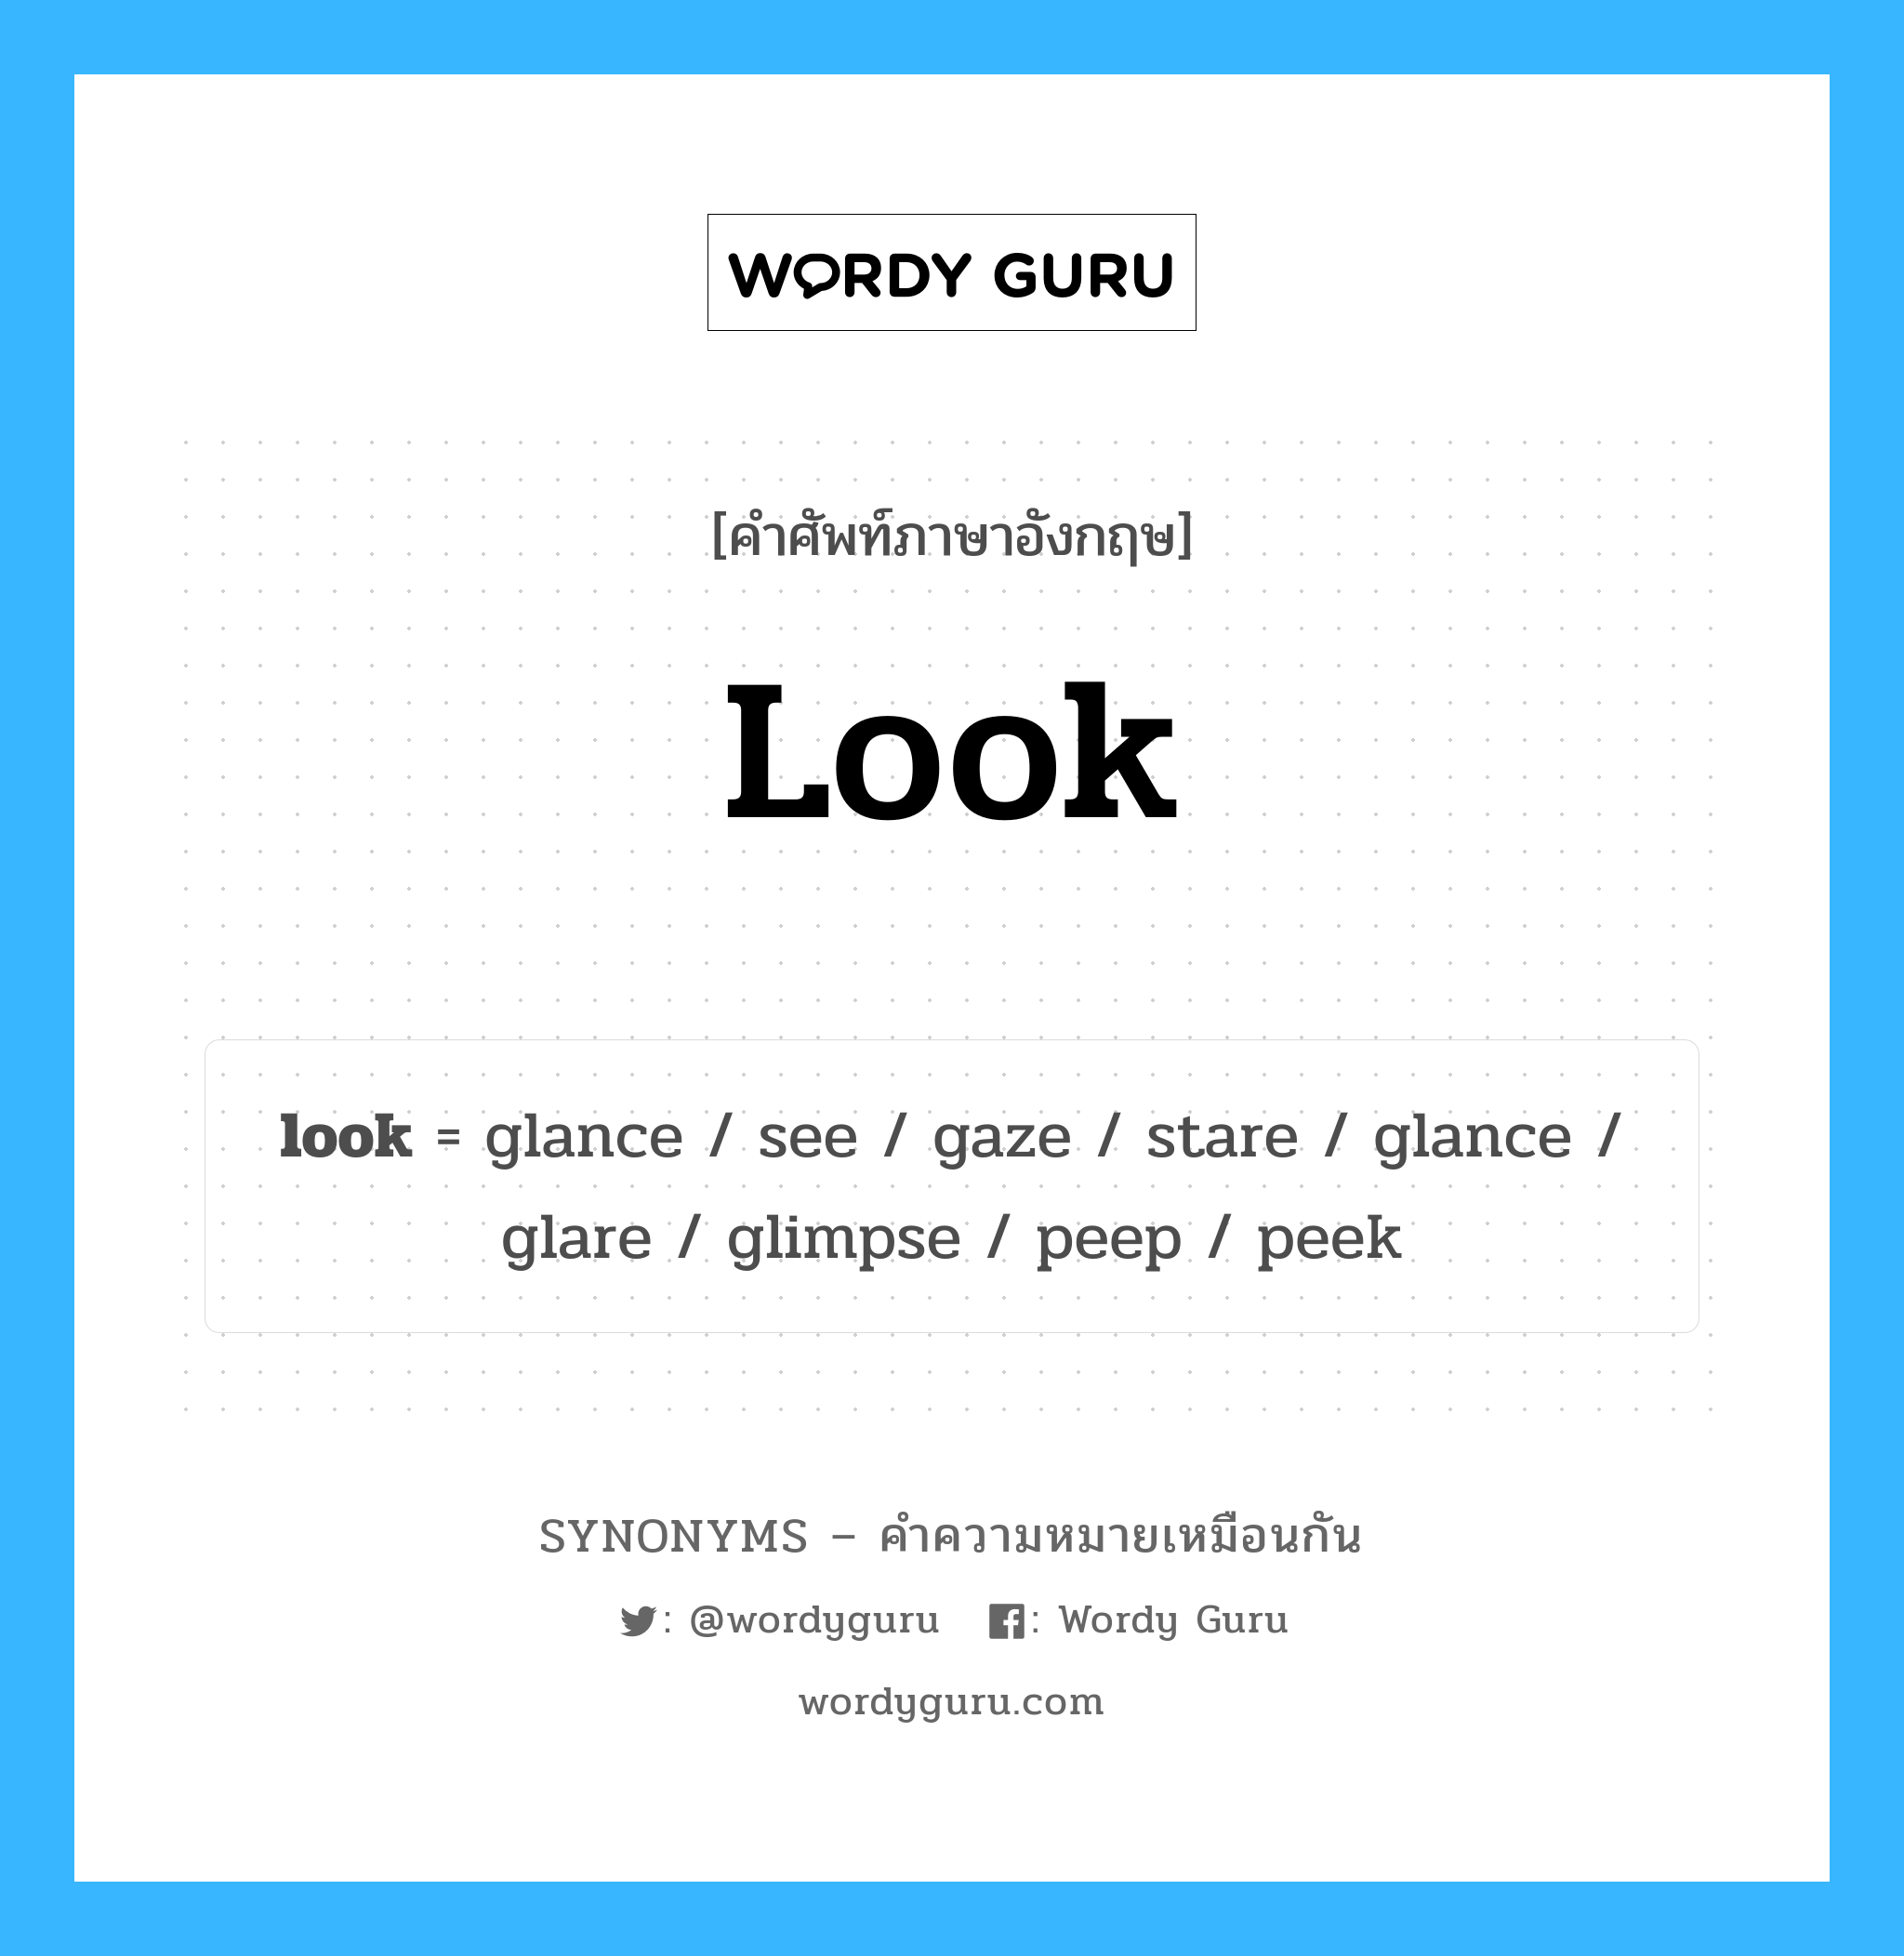 see เป็นหนึ่งใน look และมีคำอื่น ๆ อีกดังนี้, คำศัพท์ภาษาอังกฤษ see ความหมายคล้ายกันกับ look แปลว่า ดู หมวด look